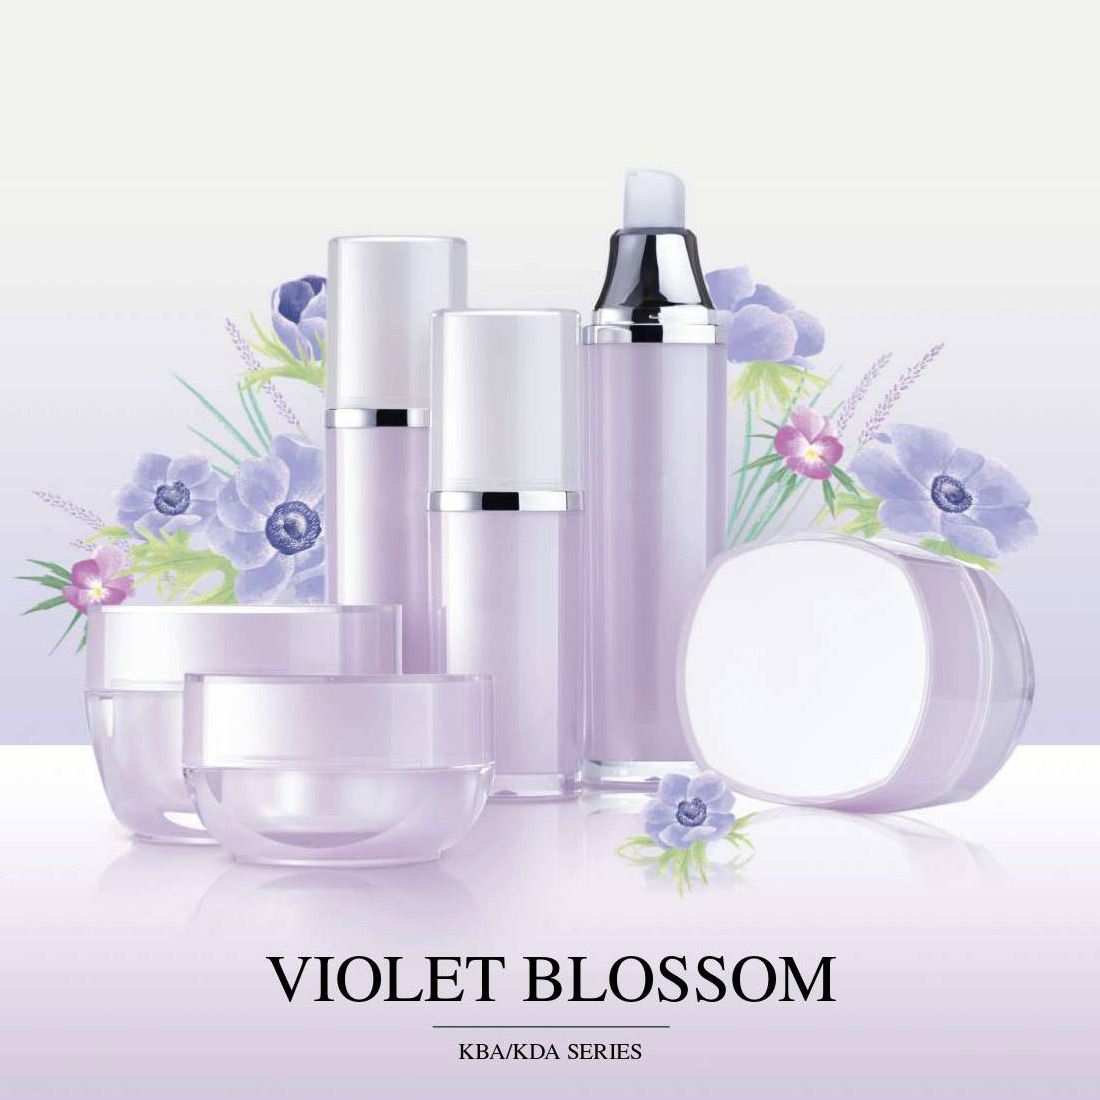 Violet Blossom (บรรจุภัณฑ์เครื่องสำอางและผลิตภัณฑ์บำรุงผิวอะคริลิกหรูหรา) KBA และ KDA ซีรี่ส์